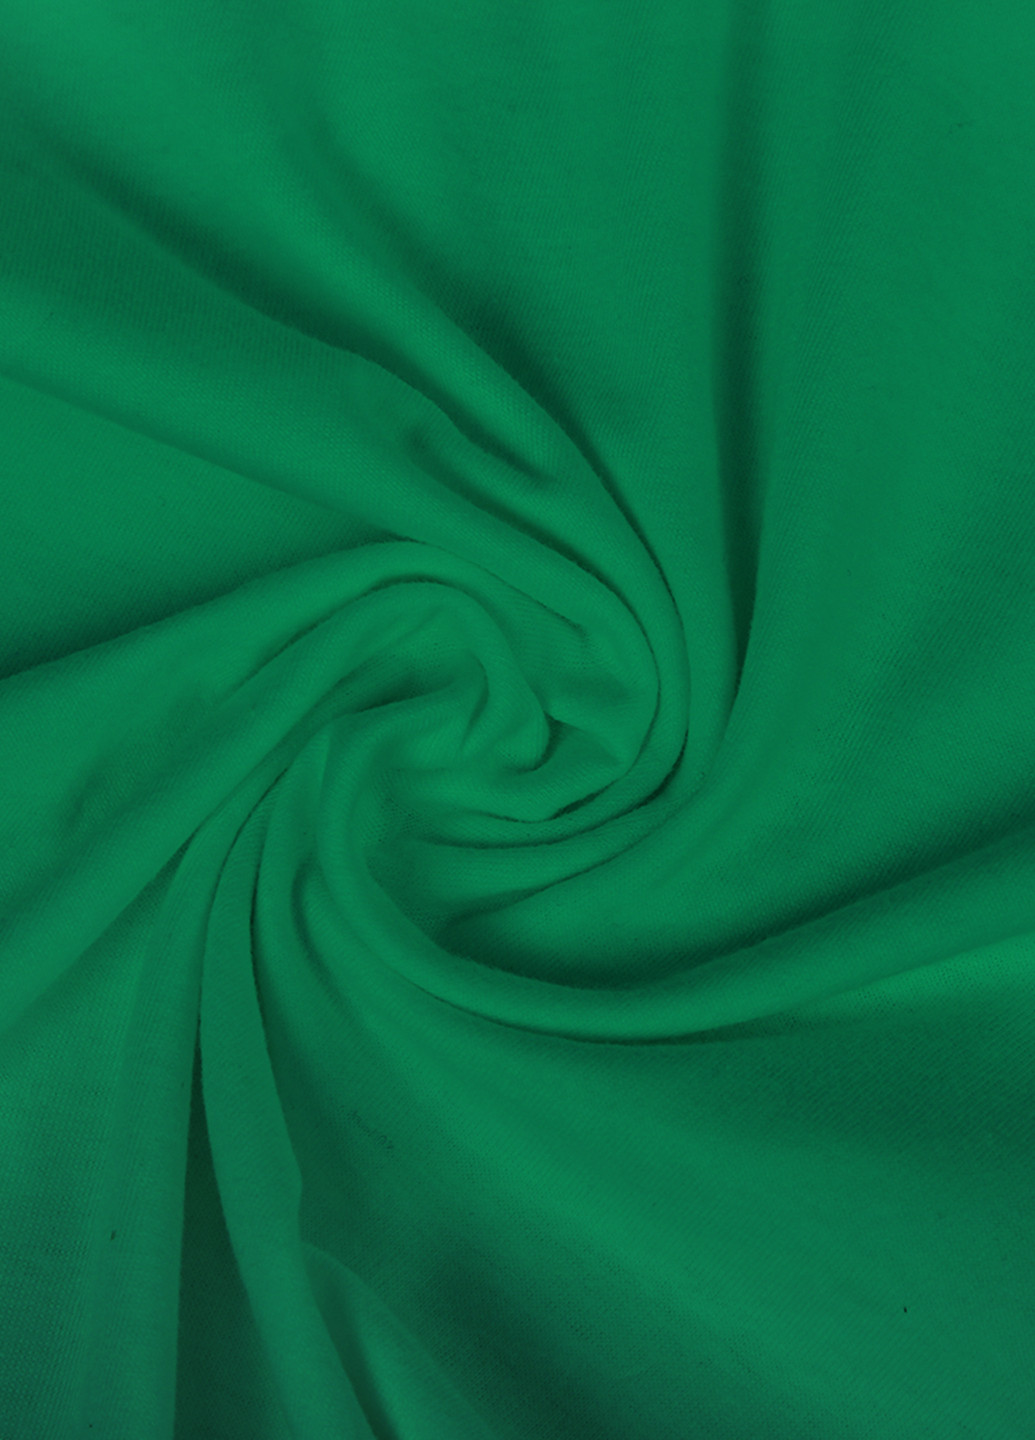 Зелена демісезонна футболка дитяча фортнайт (fortnite) (9224-1195) MobiPrint